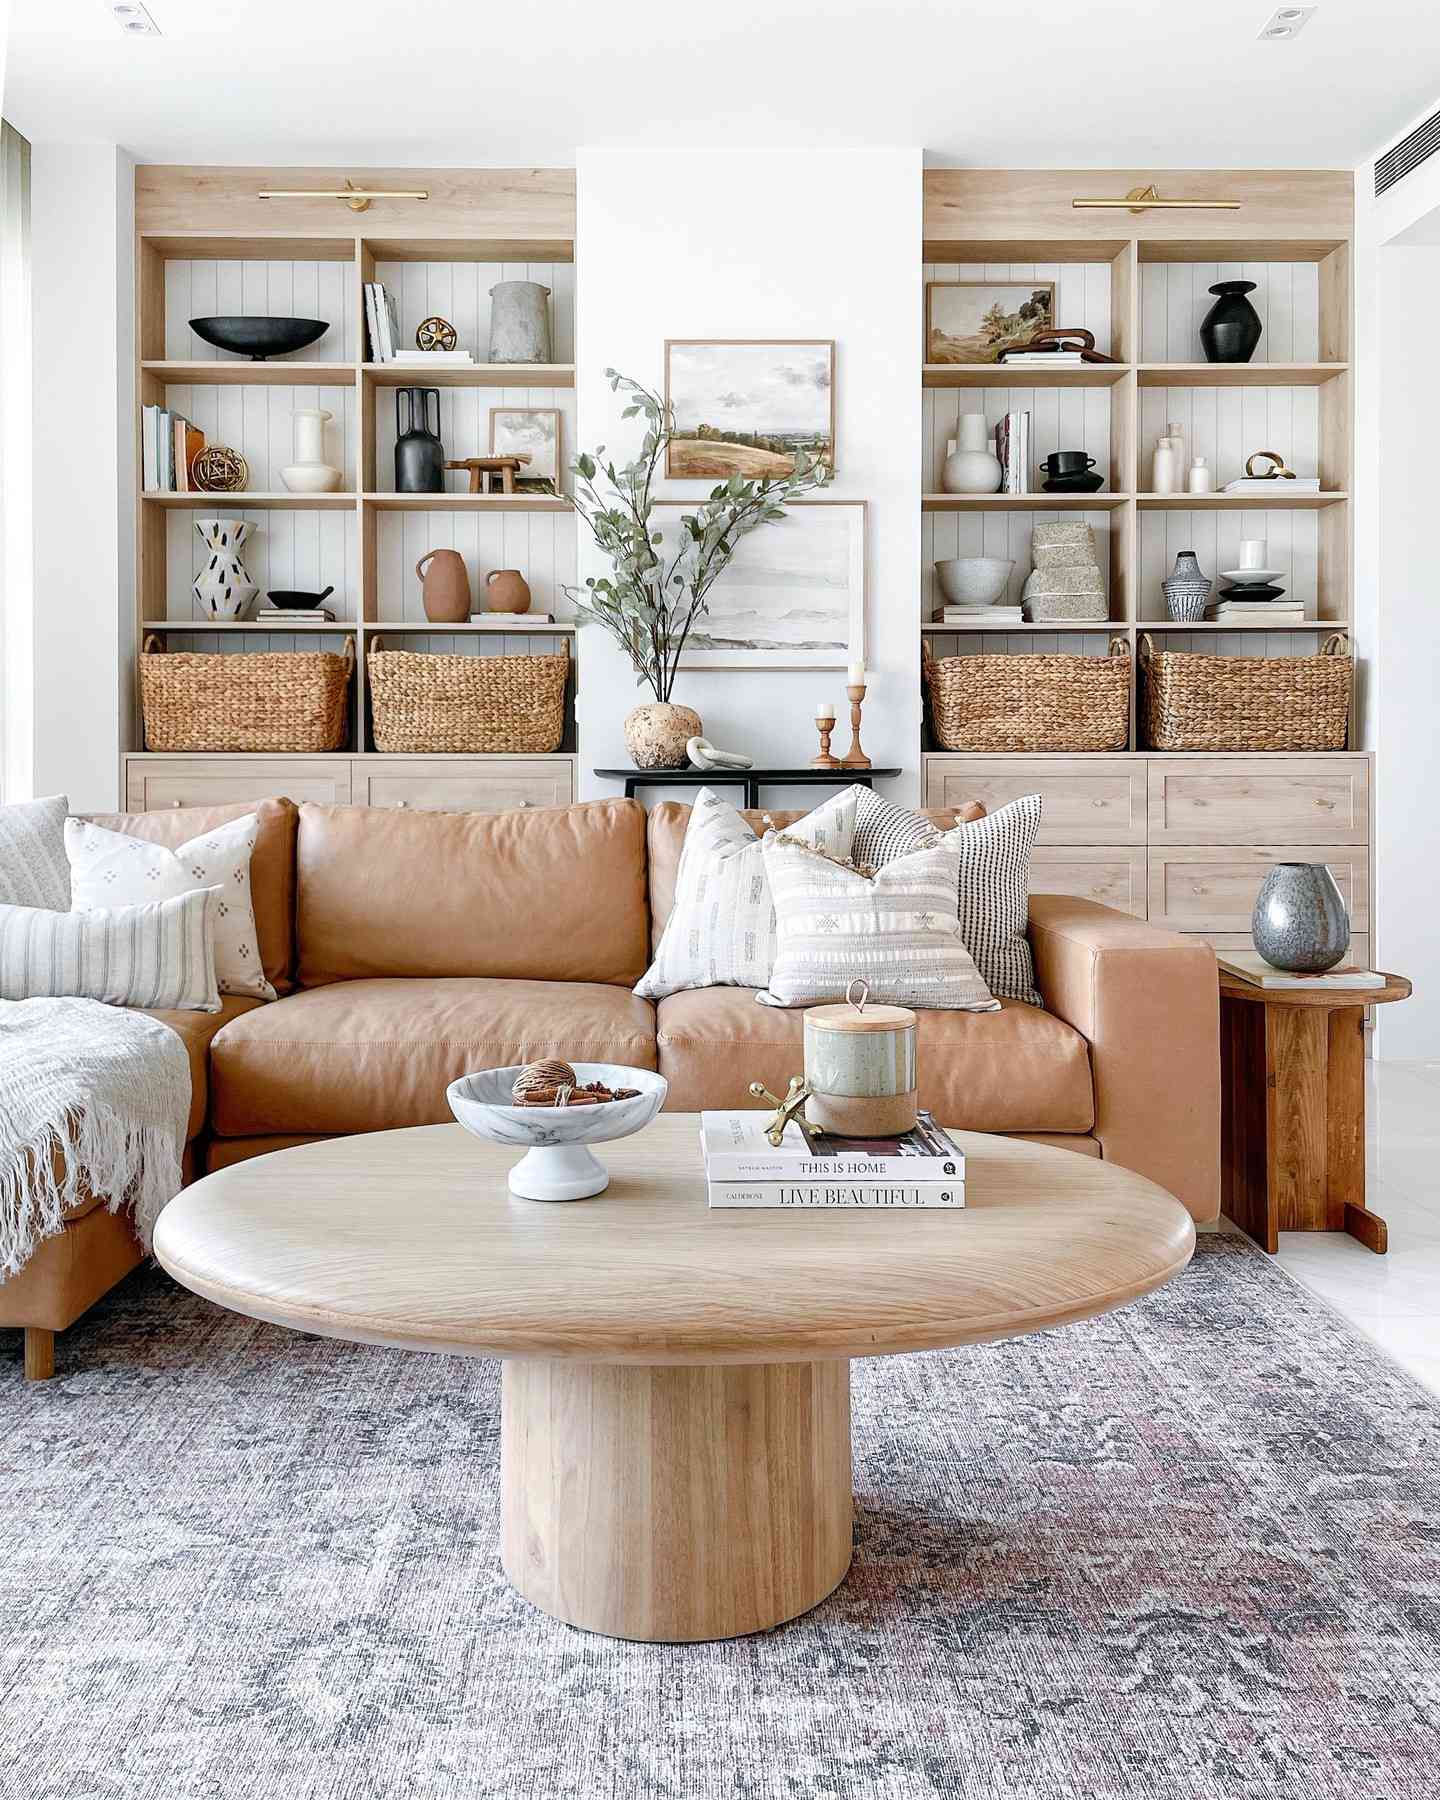 Salón marrón con sofá marrón y muebles empotrados de madera.